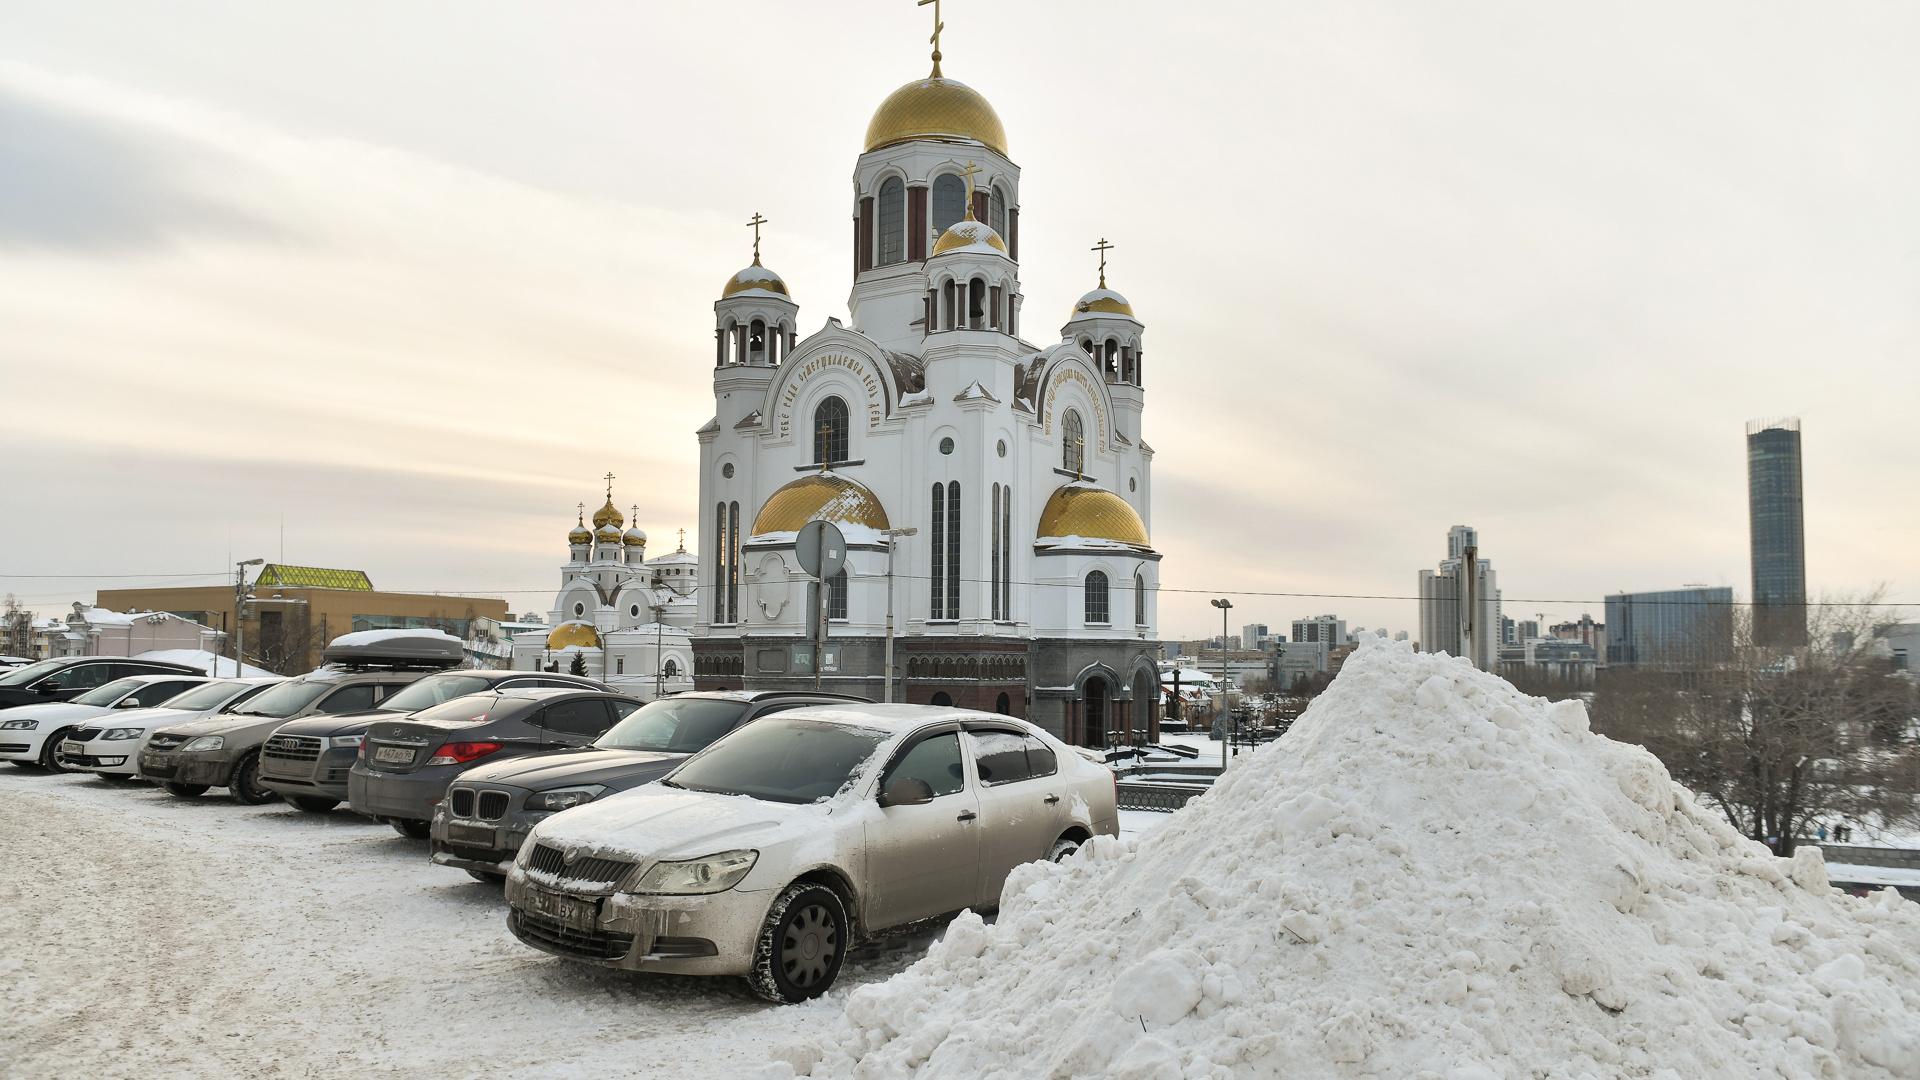 Откуда столько машин? Рассматриваем изнанку самой известной в мире улицы Екатеринбурга